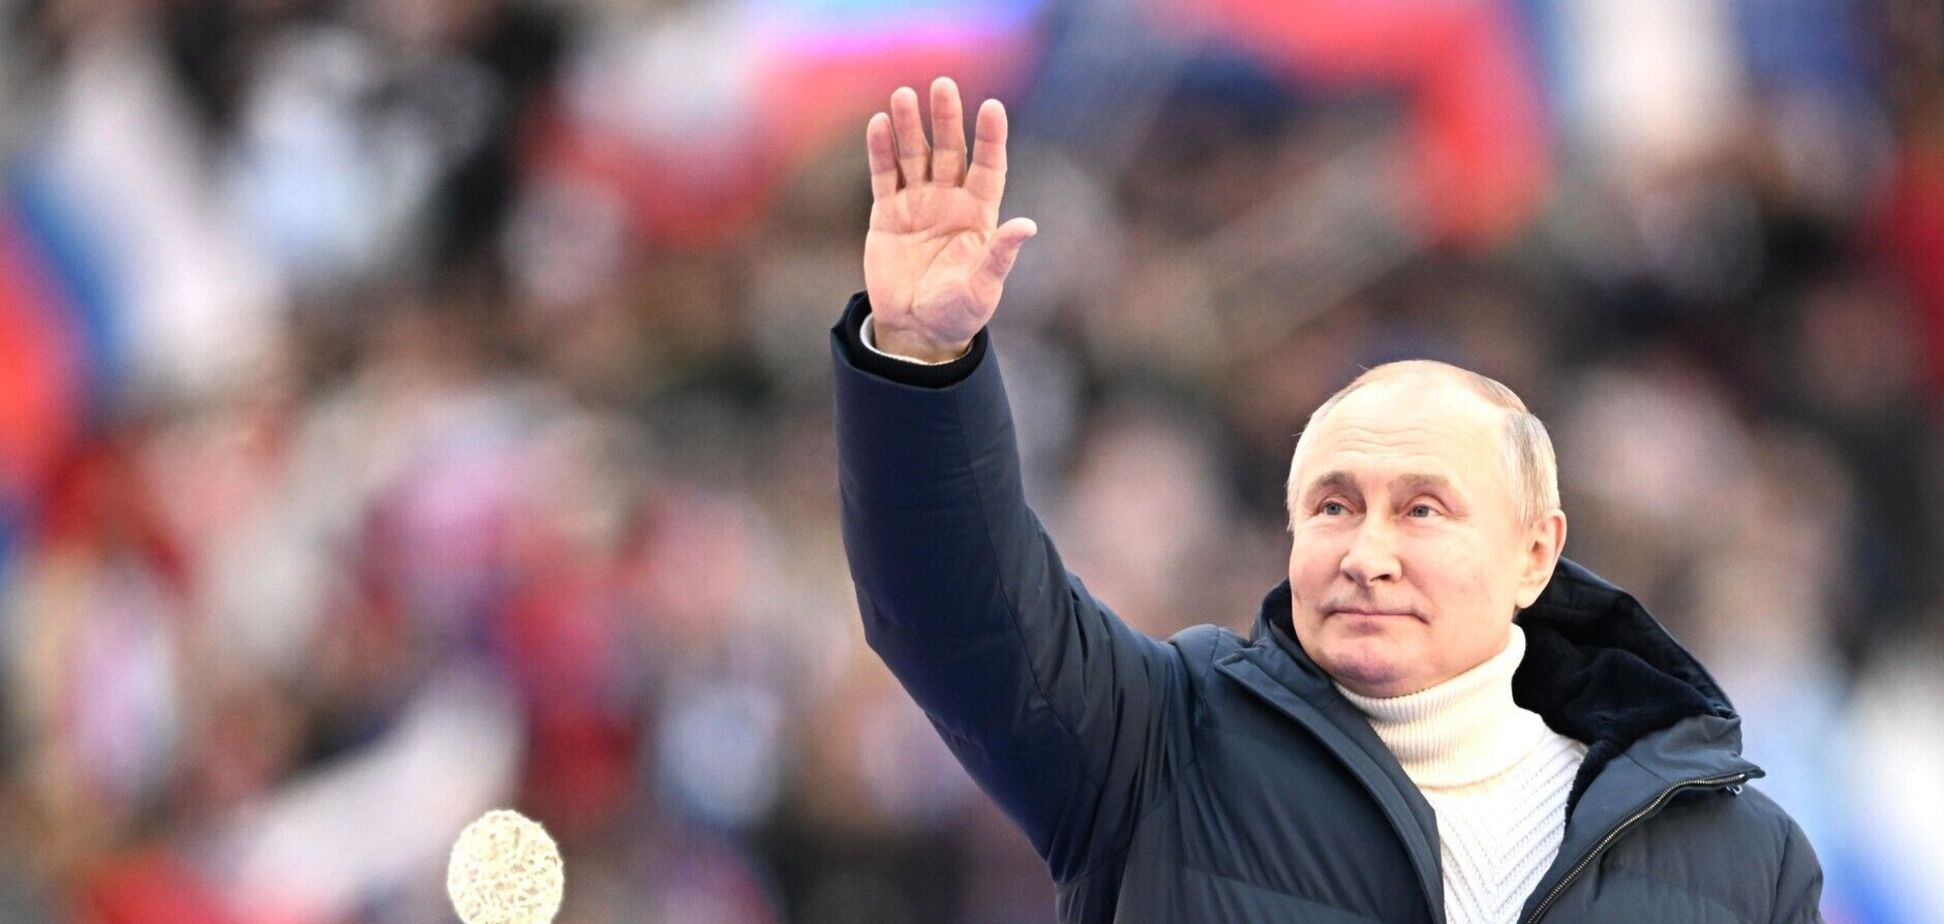 Есть три нюанса: психолог рассказала, что не так с речью Путина на концерте в Лужниках